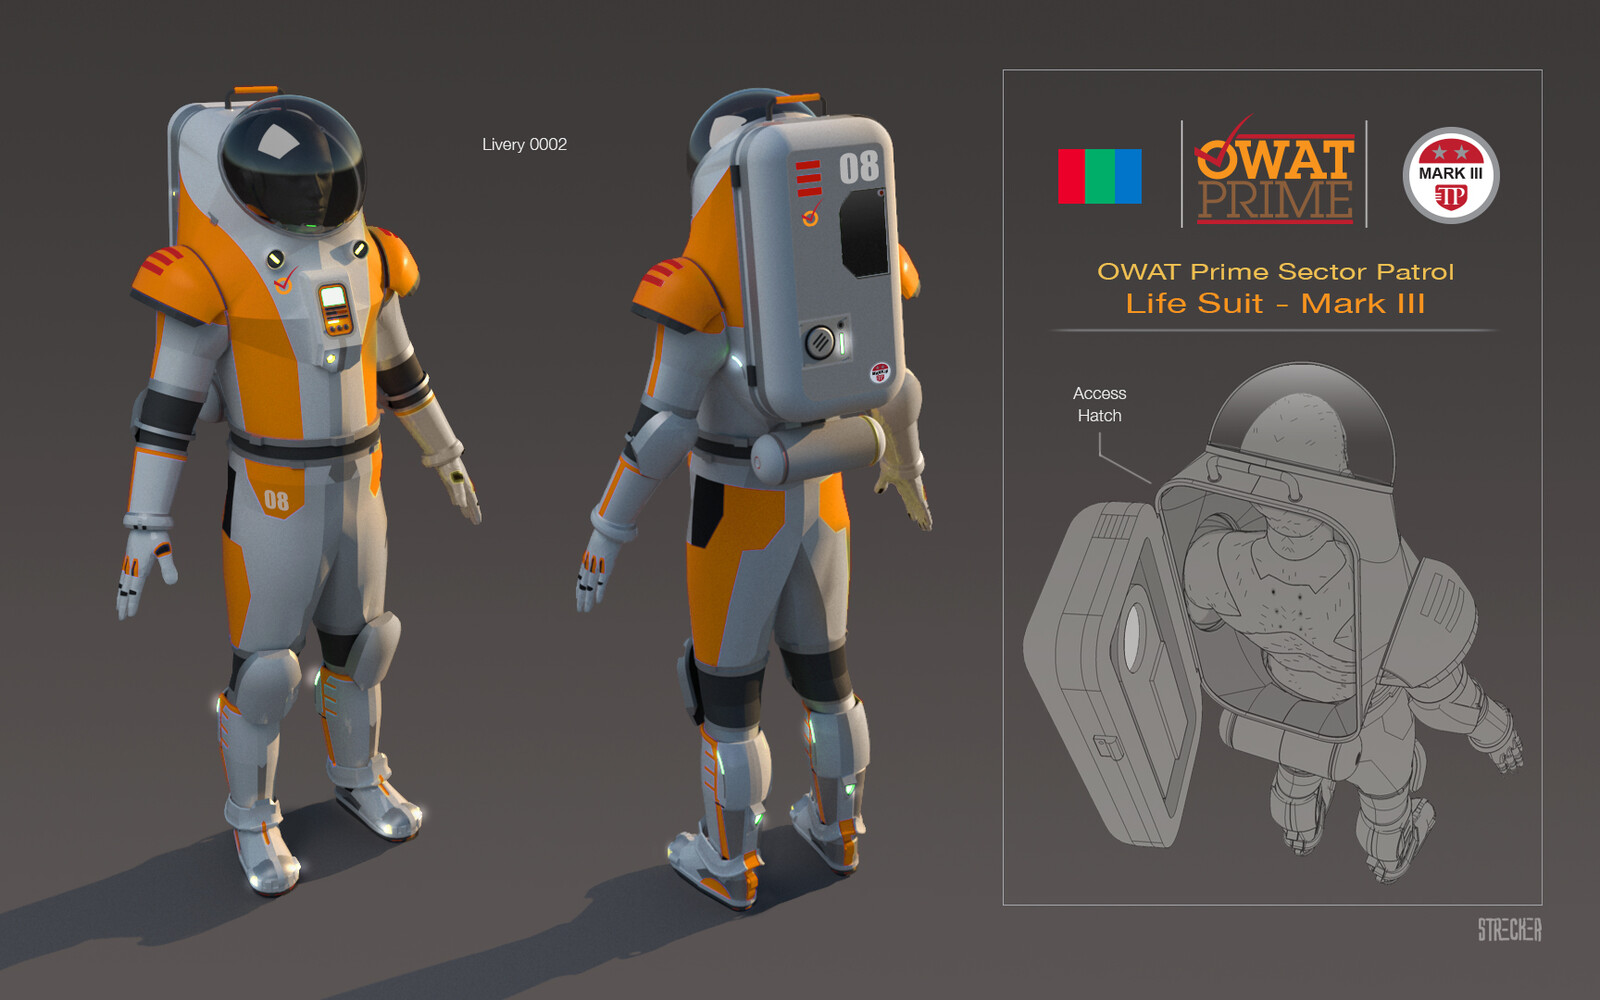 Space Suit concept